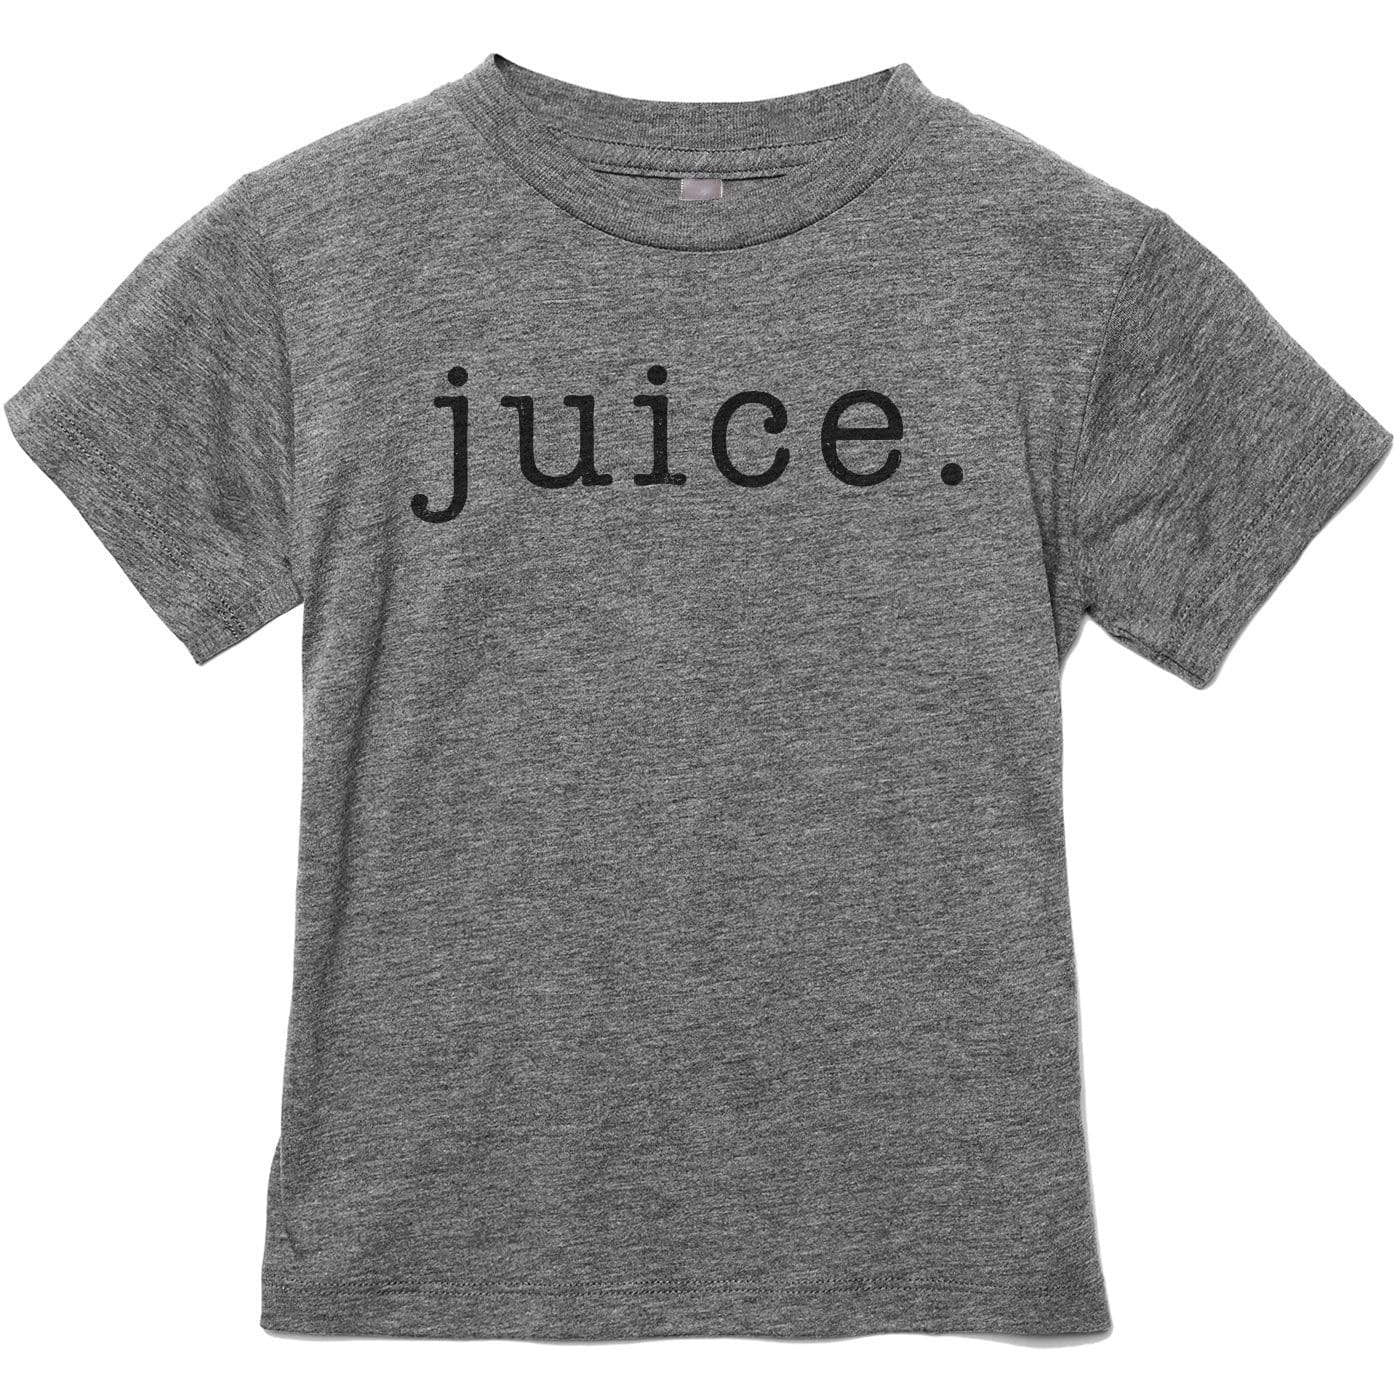 Juice Text